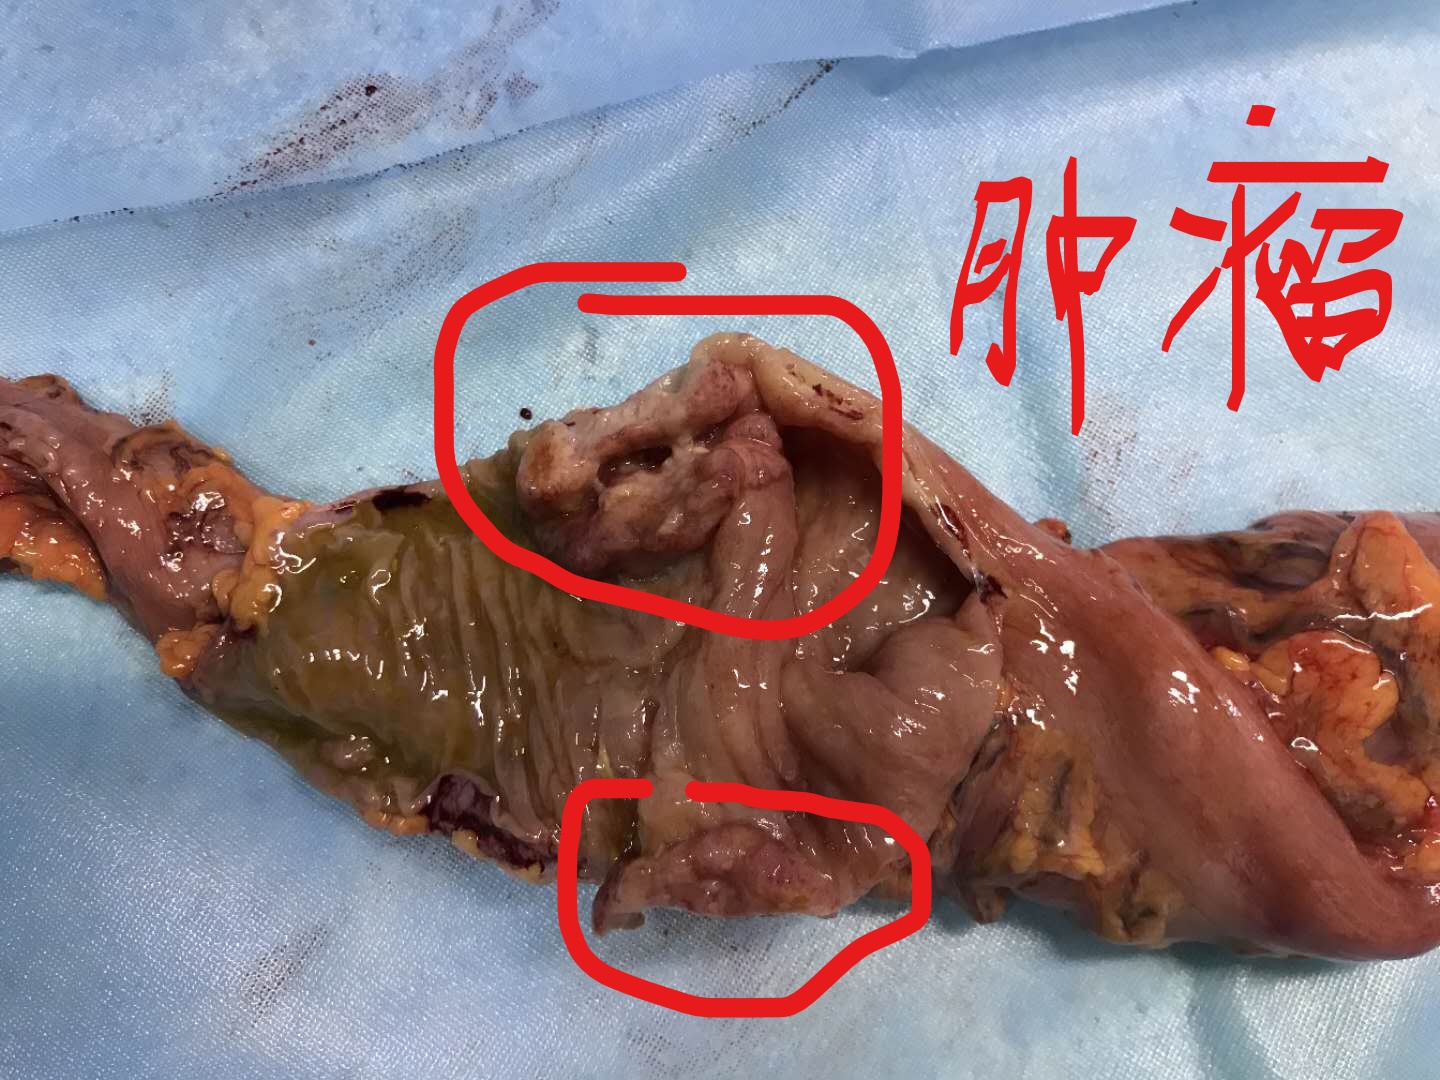 结肠浆膜图片